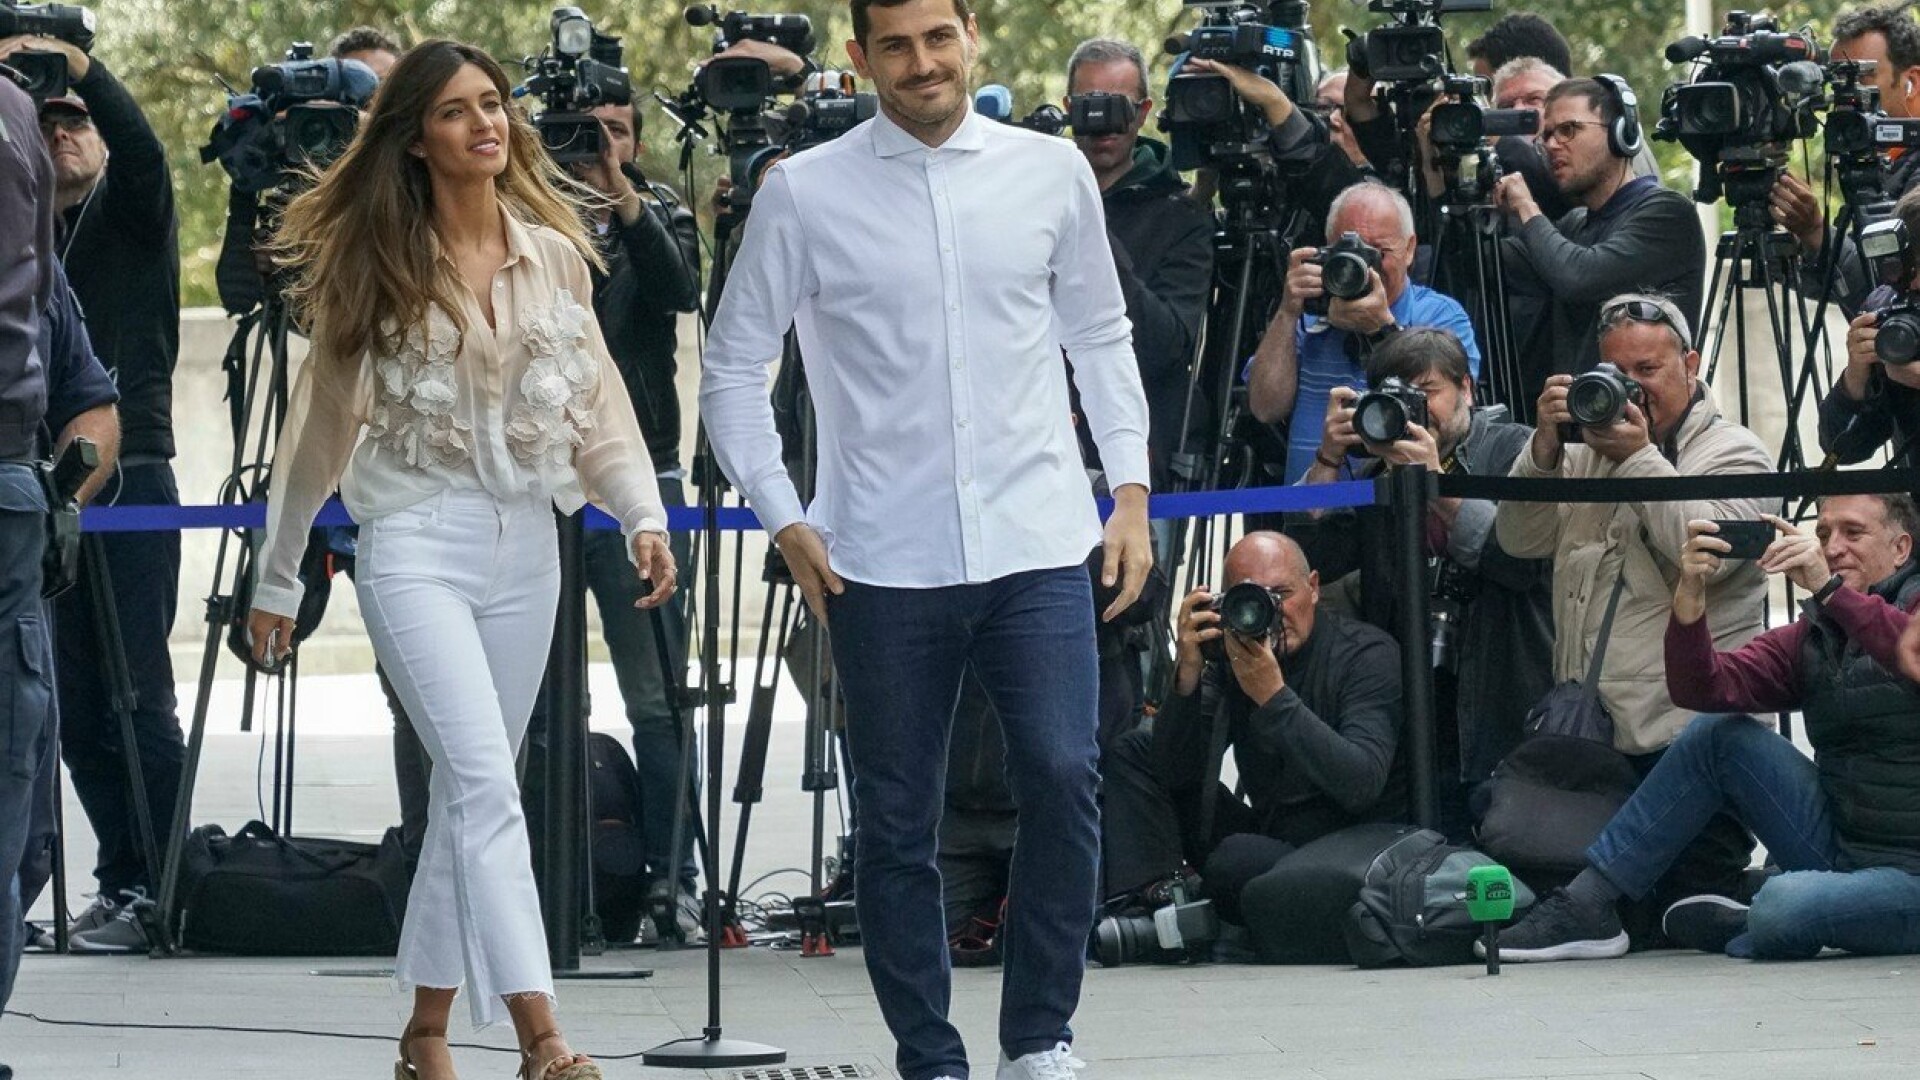 Soţia portarului Iker Casillas a fost diagnosticată cu cancer ovarian - 4